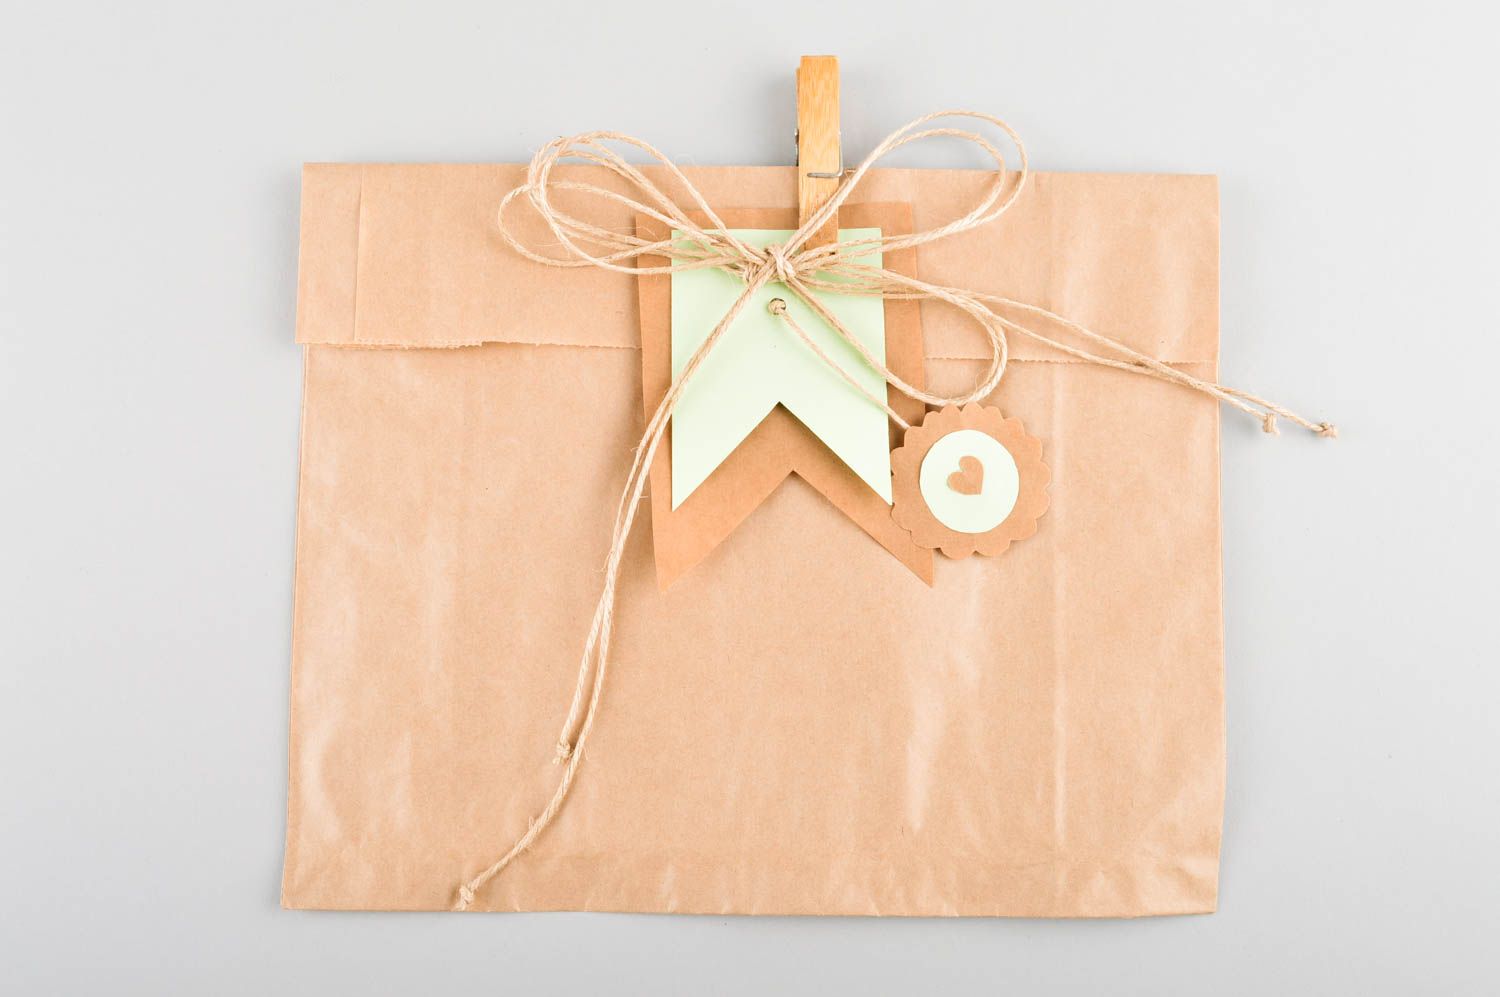 Handmade Verpackung für Geldgeschenke kreative Geschenkidee Geschenk Umschlag foto 1